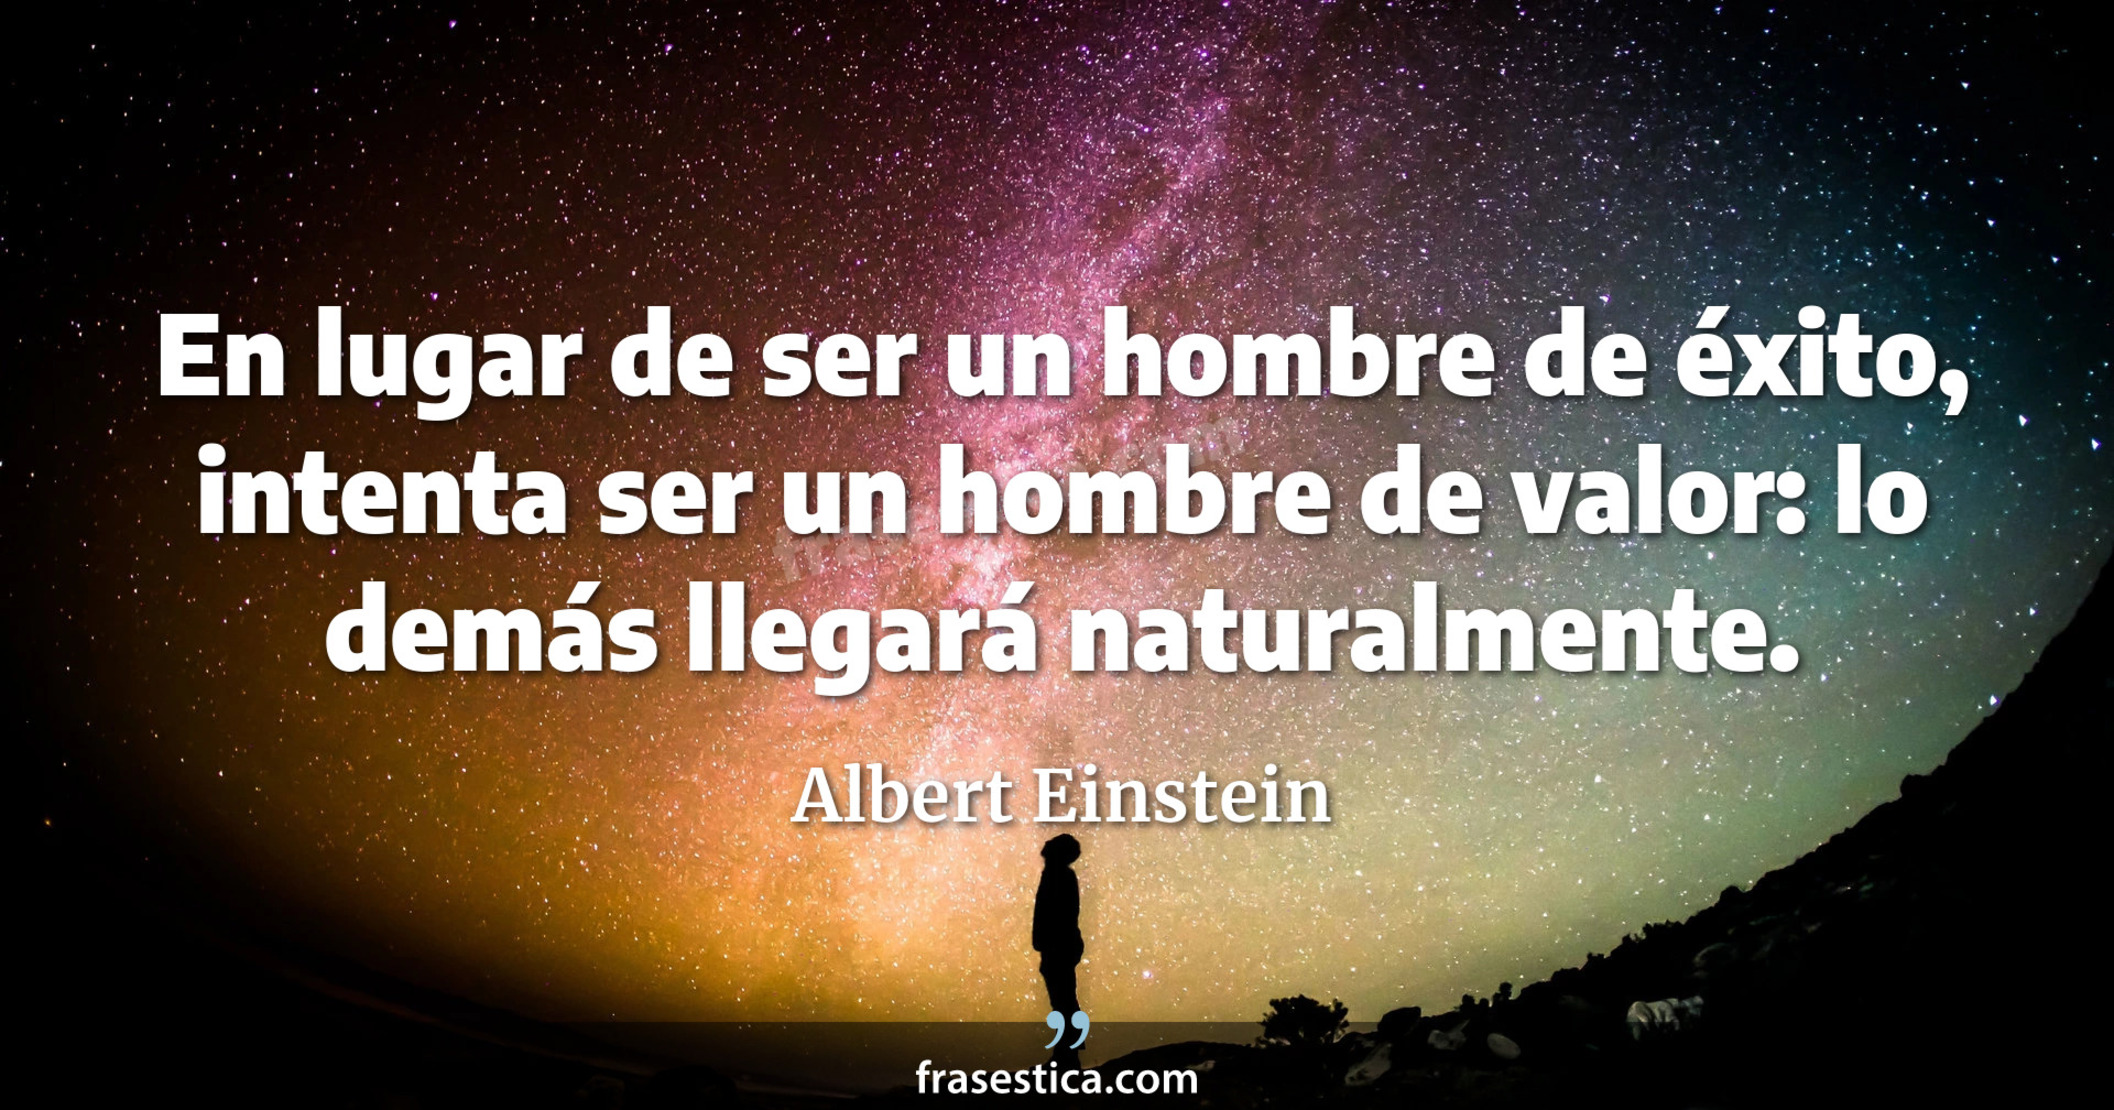 En lugar de ser un hombre de éxito, intenta ser un hombre de valor: lo demás llegará naturalmente. - Albert Einstein